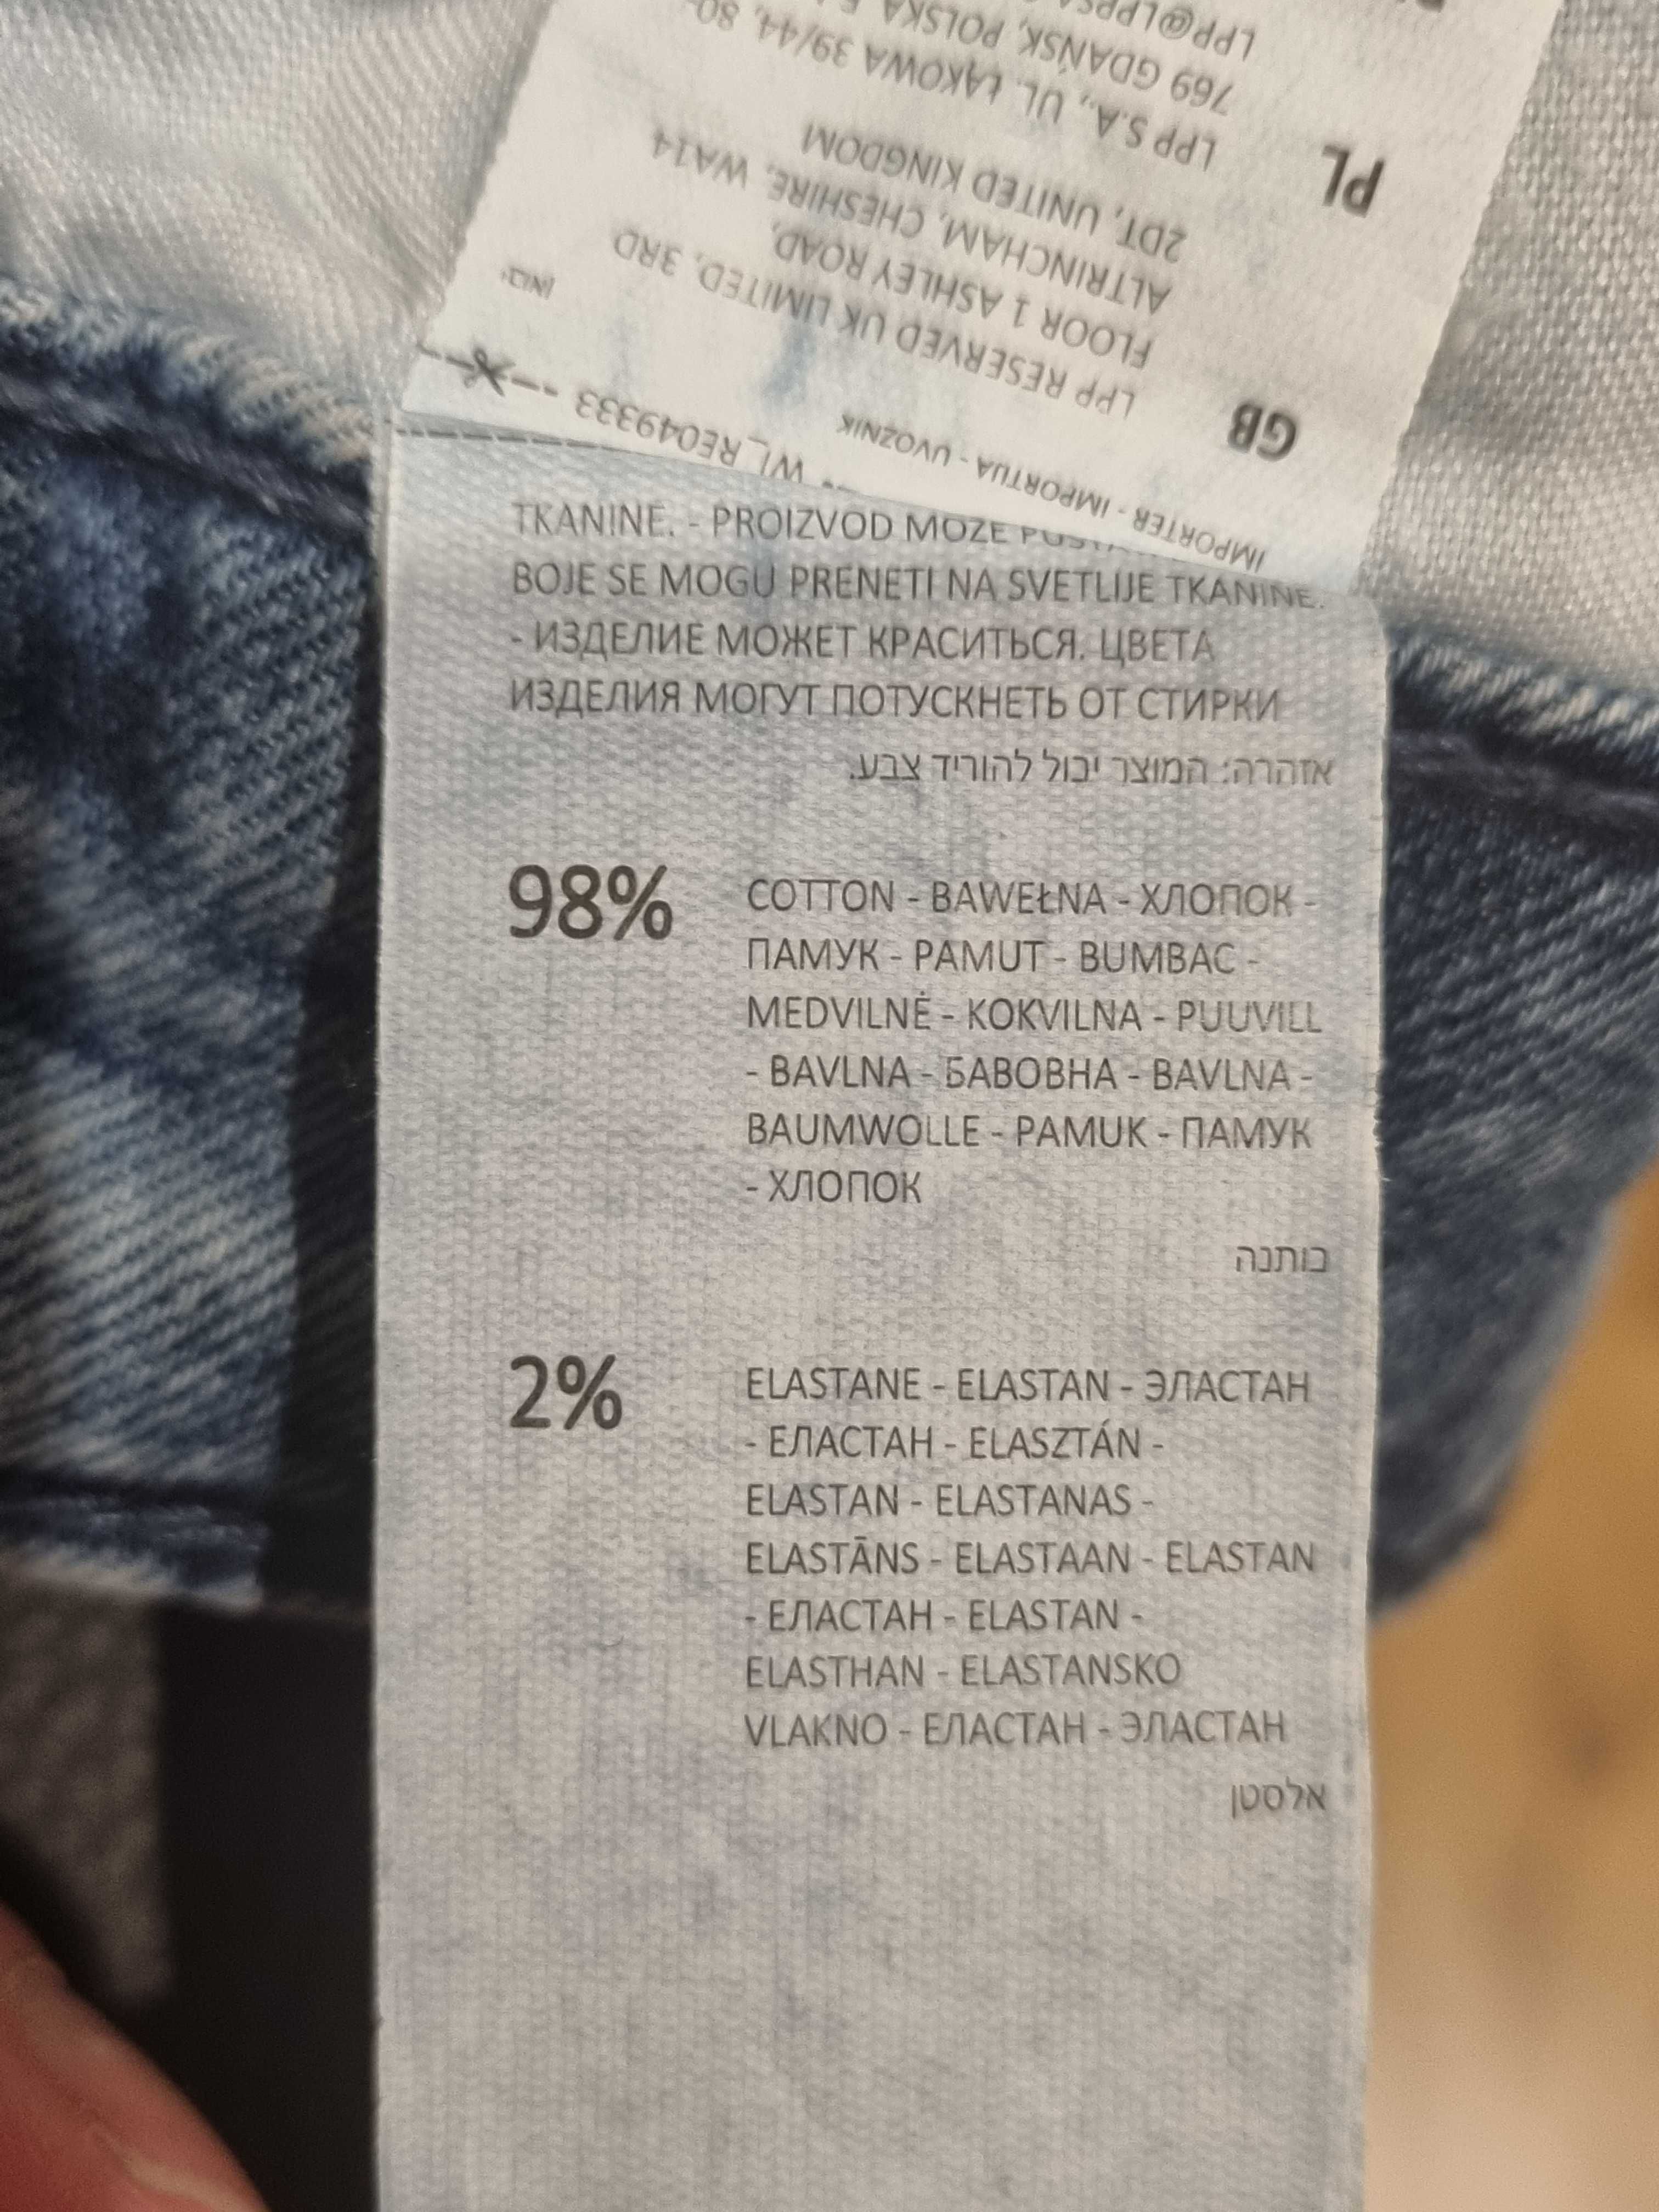 Spodnie jeansowe młodzieżowe/męskie RESERVED, r. 30